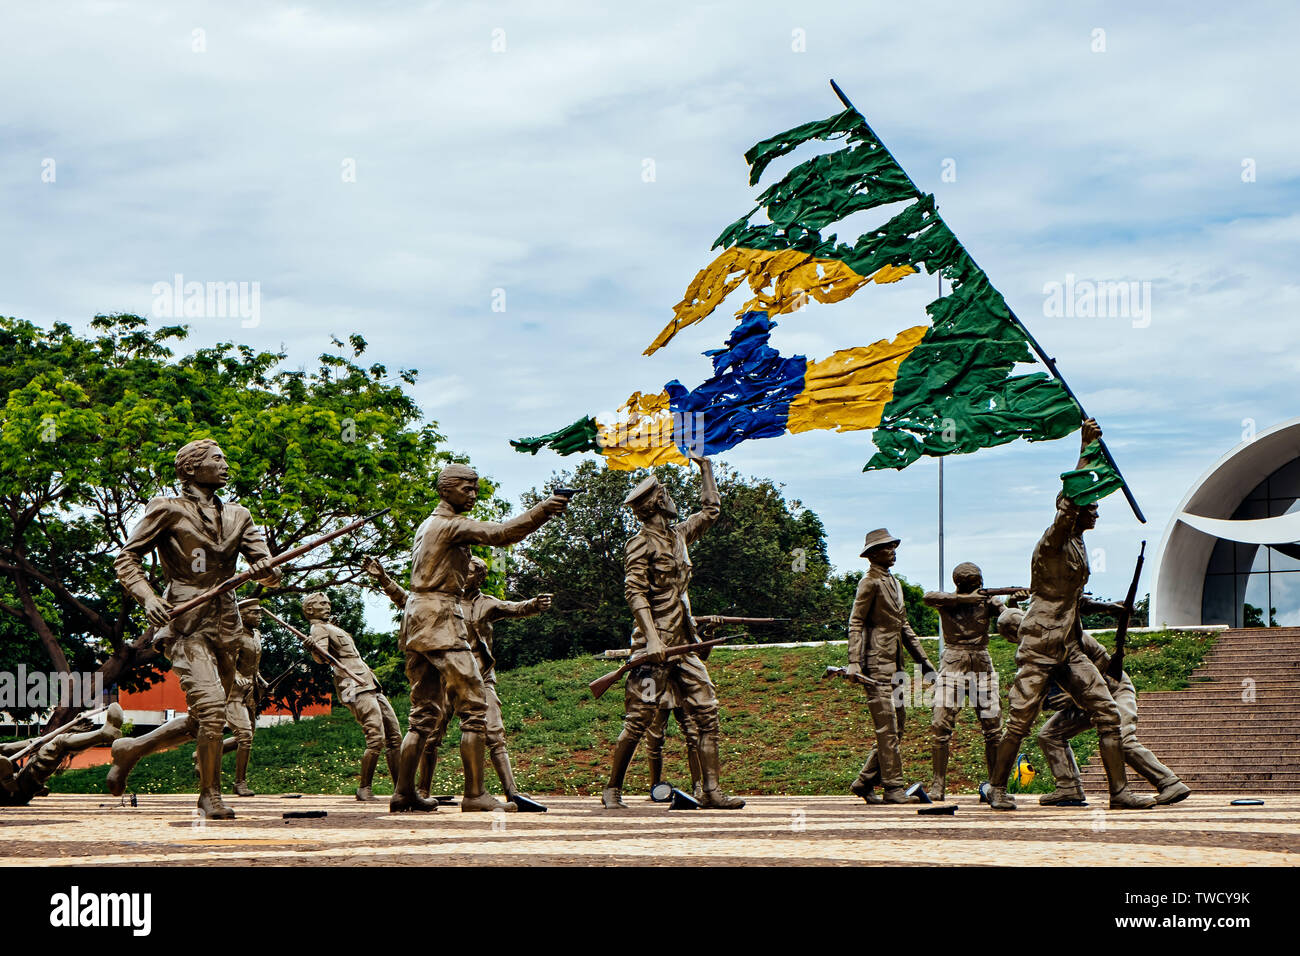 Das Denkmal der 18 do Forte und Coluna Prestes im Sunflower Square in Palmas, Bundesstaat Tocantins, Brasilien Stockfoto